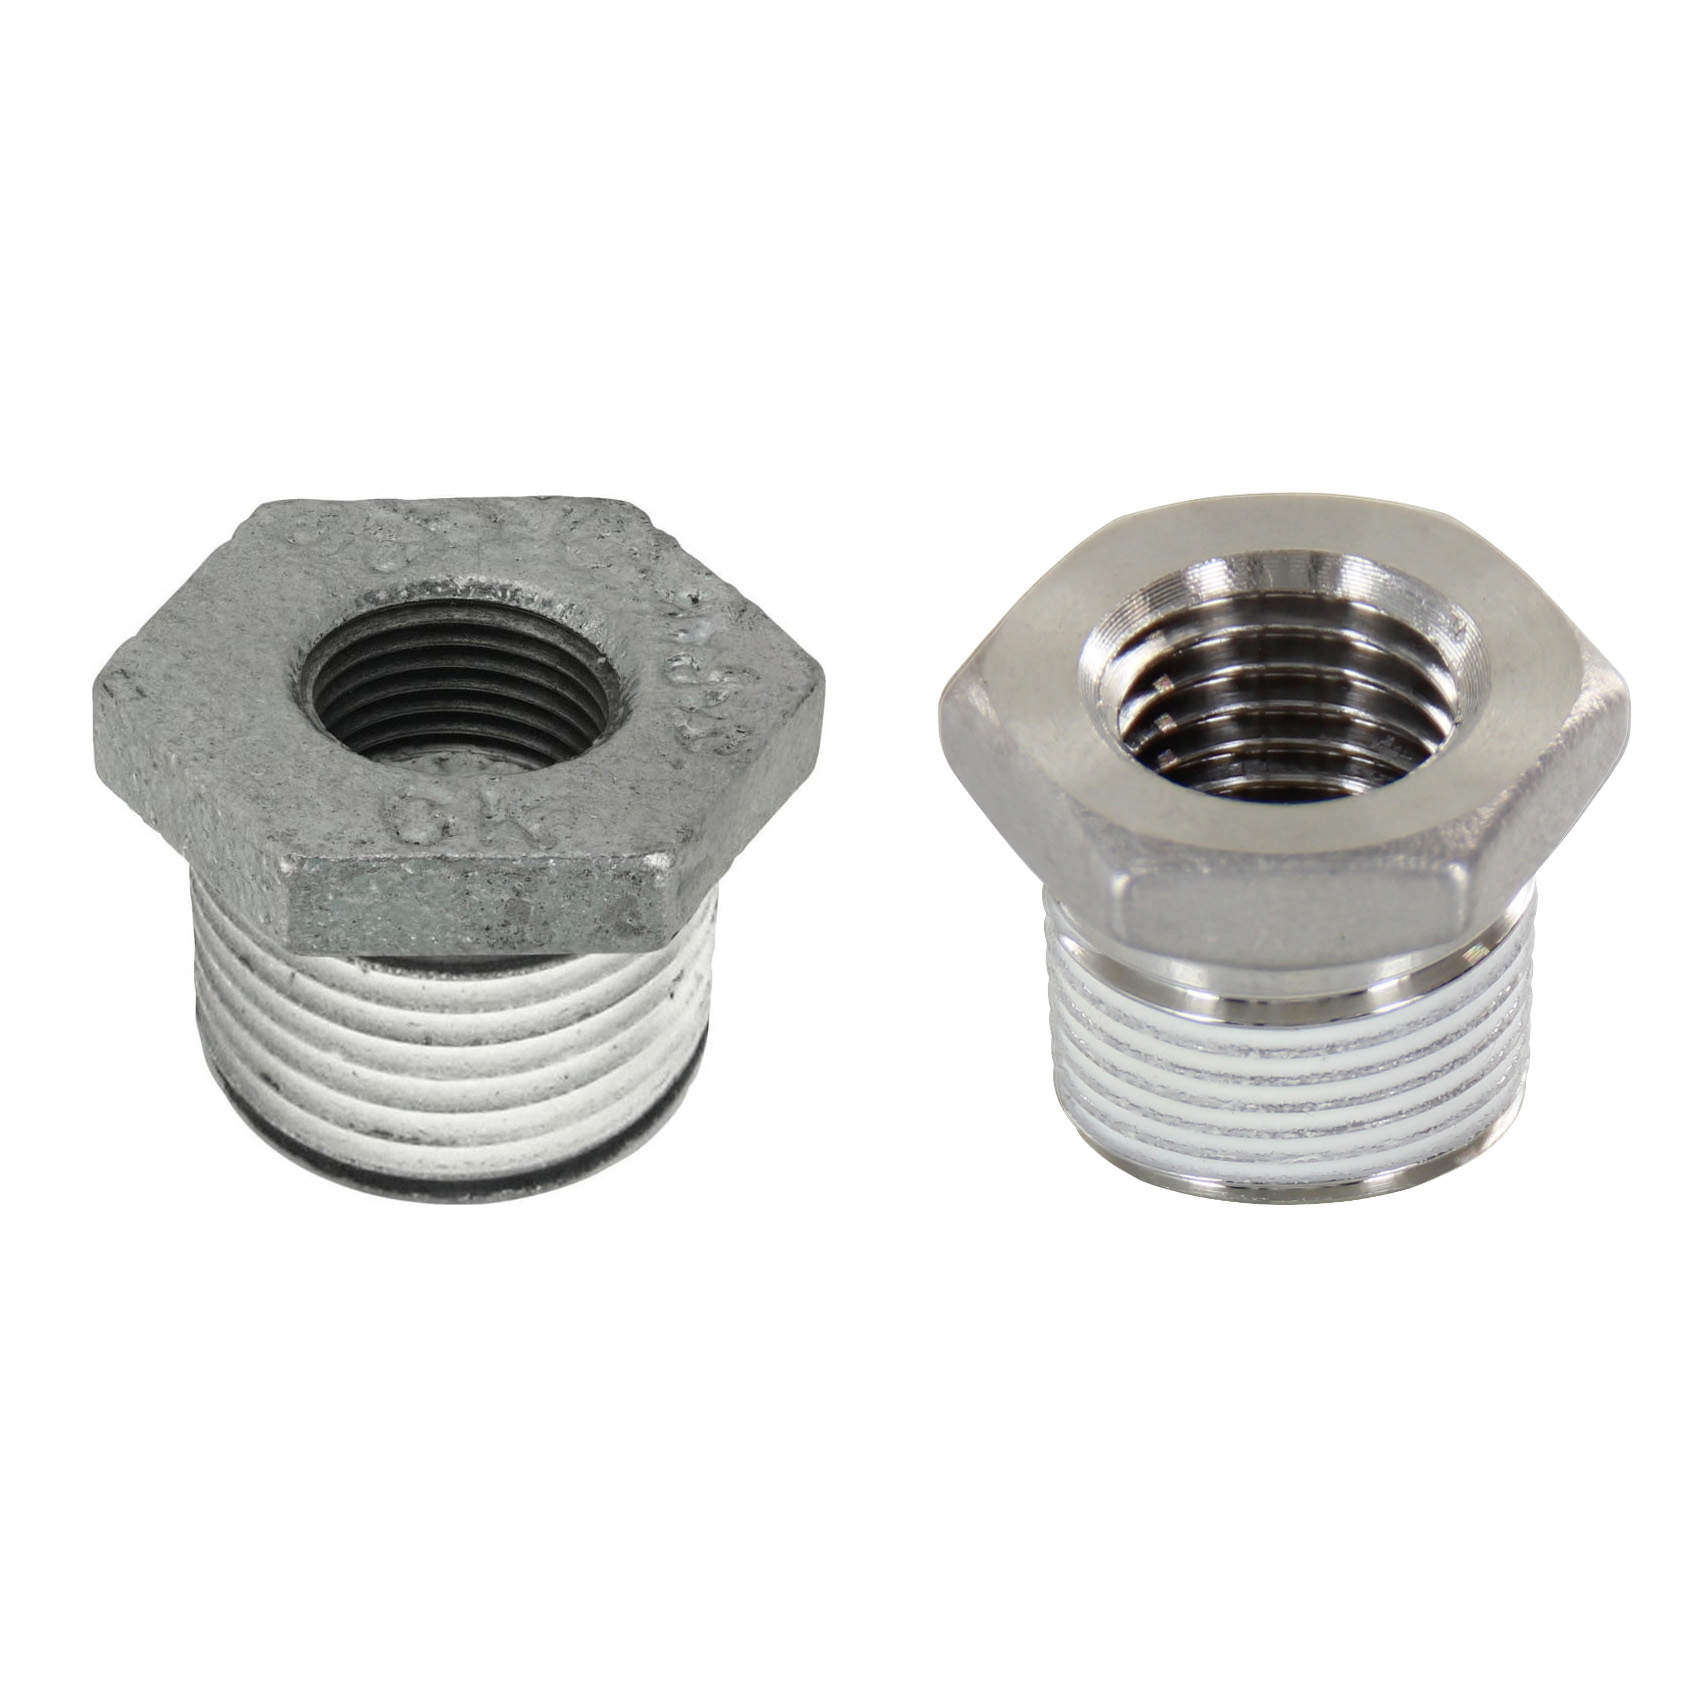 Low Pressure Screw Fittings - Thread Coated Type - Steel Pipe Fittings - Bushings SUCPB12